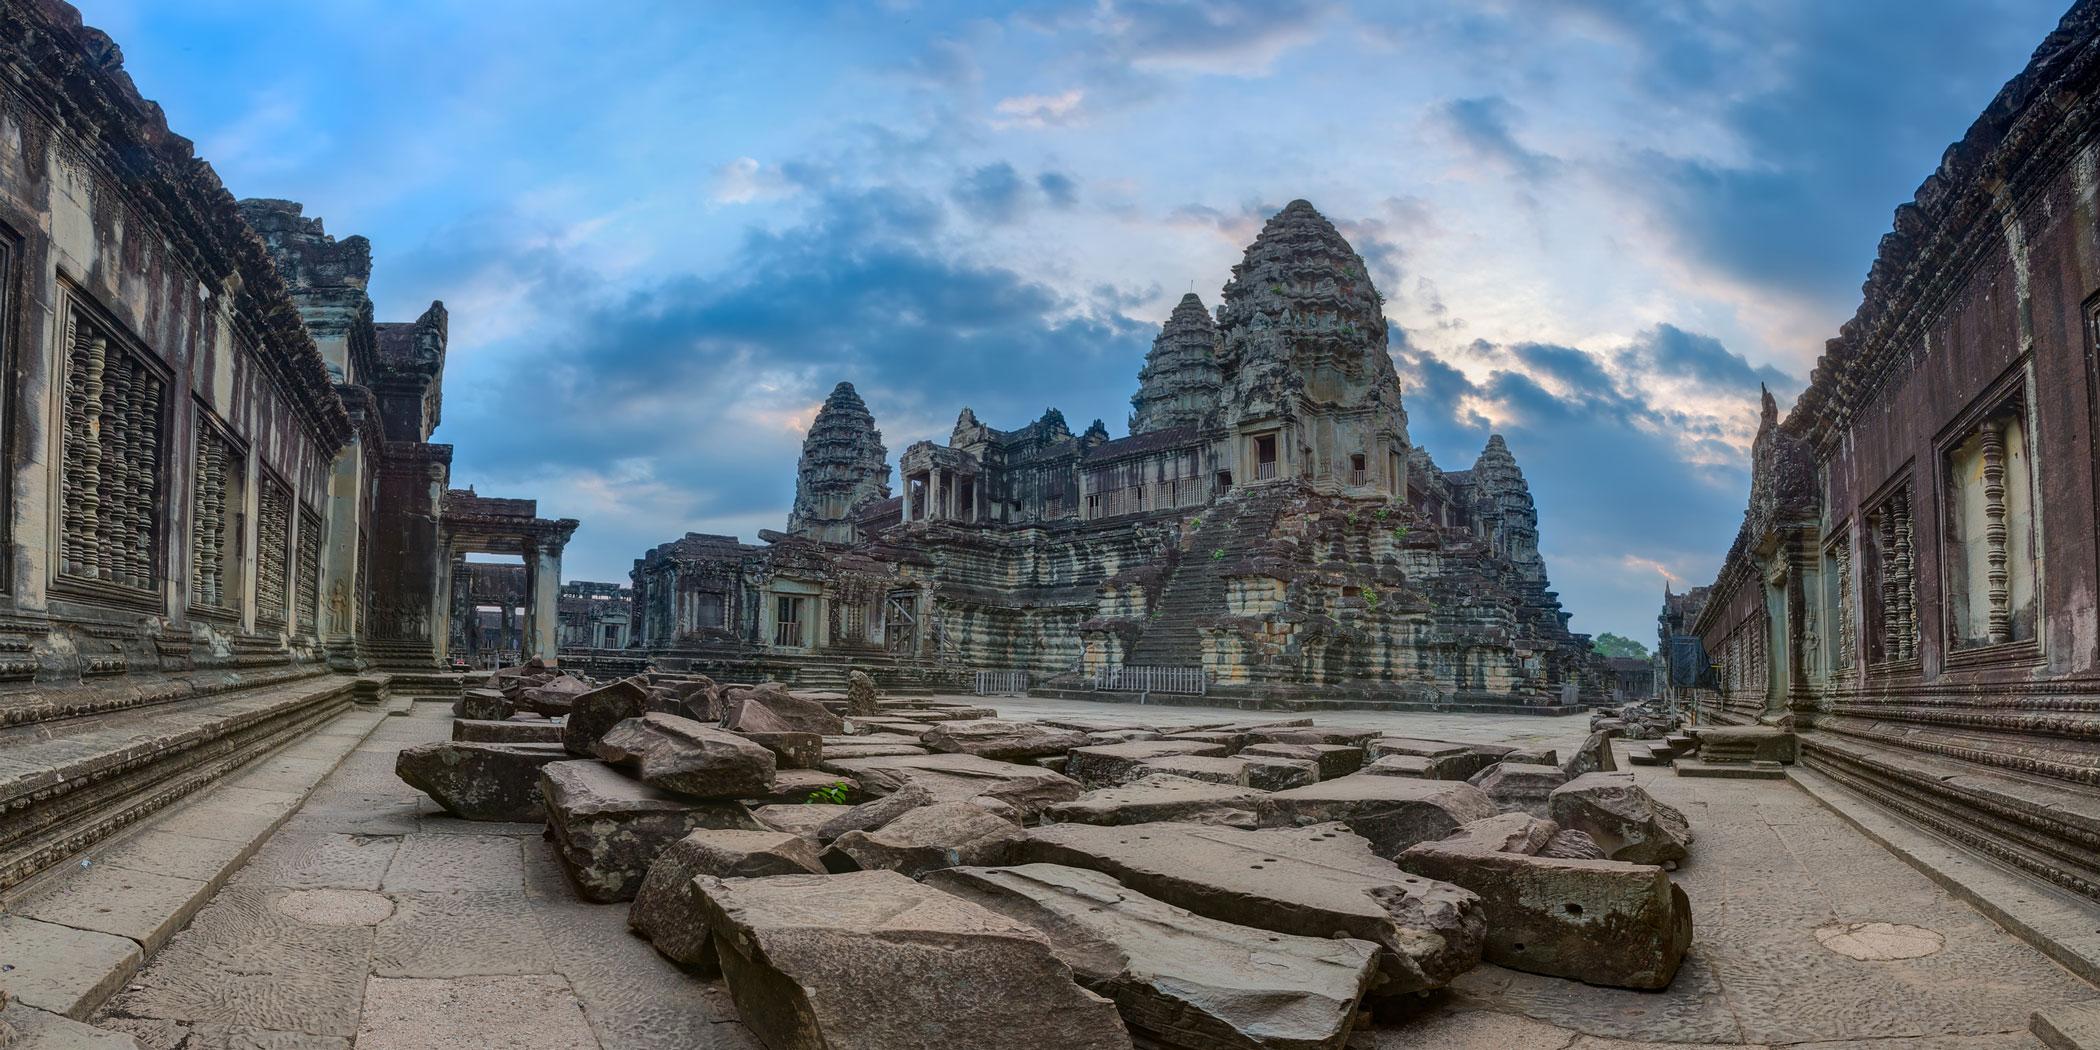 Towers at Angkor Wat in Cambodia